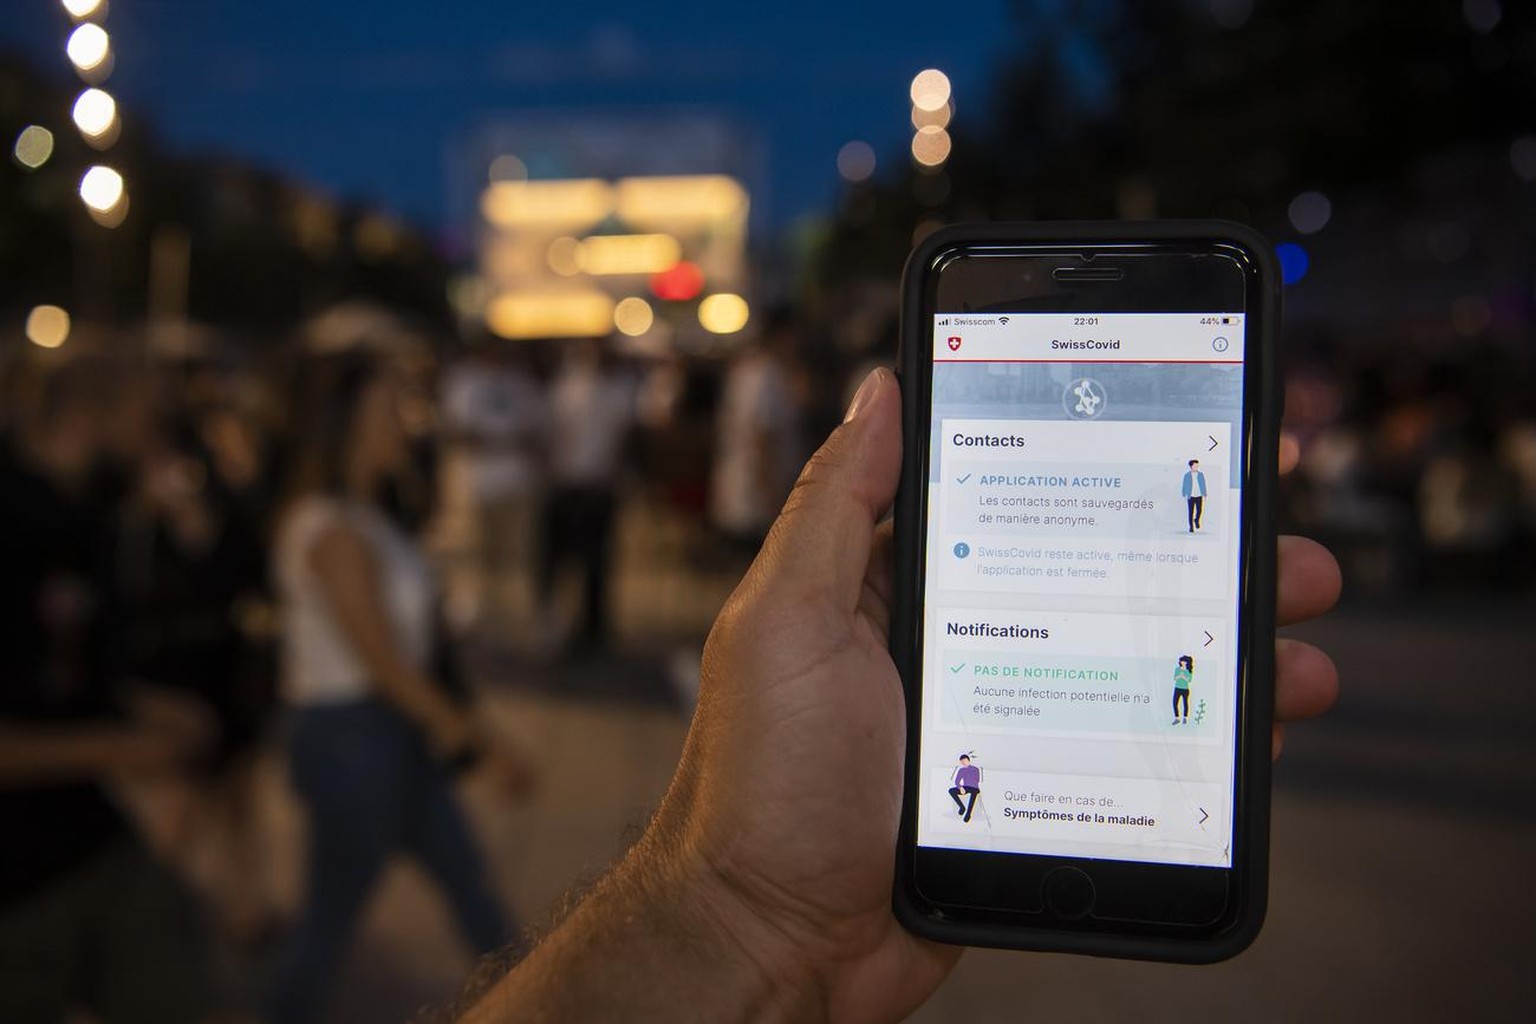 Une personne regarde sur son smartphone l'application SwissCovid alors que des personnes font la fete lors d'une soiree d'ete le samedi 27 juin 2020 dans le quartier du Flon a Lausanne. SwissCovid est ...